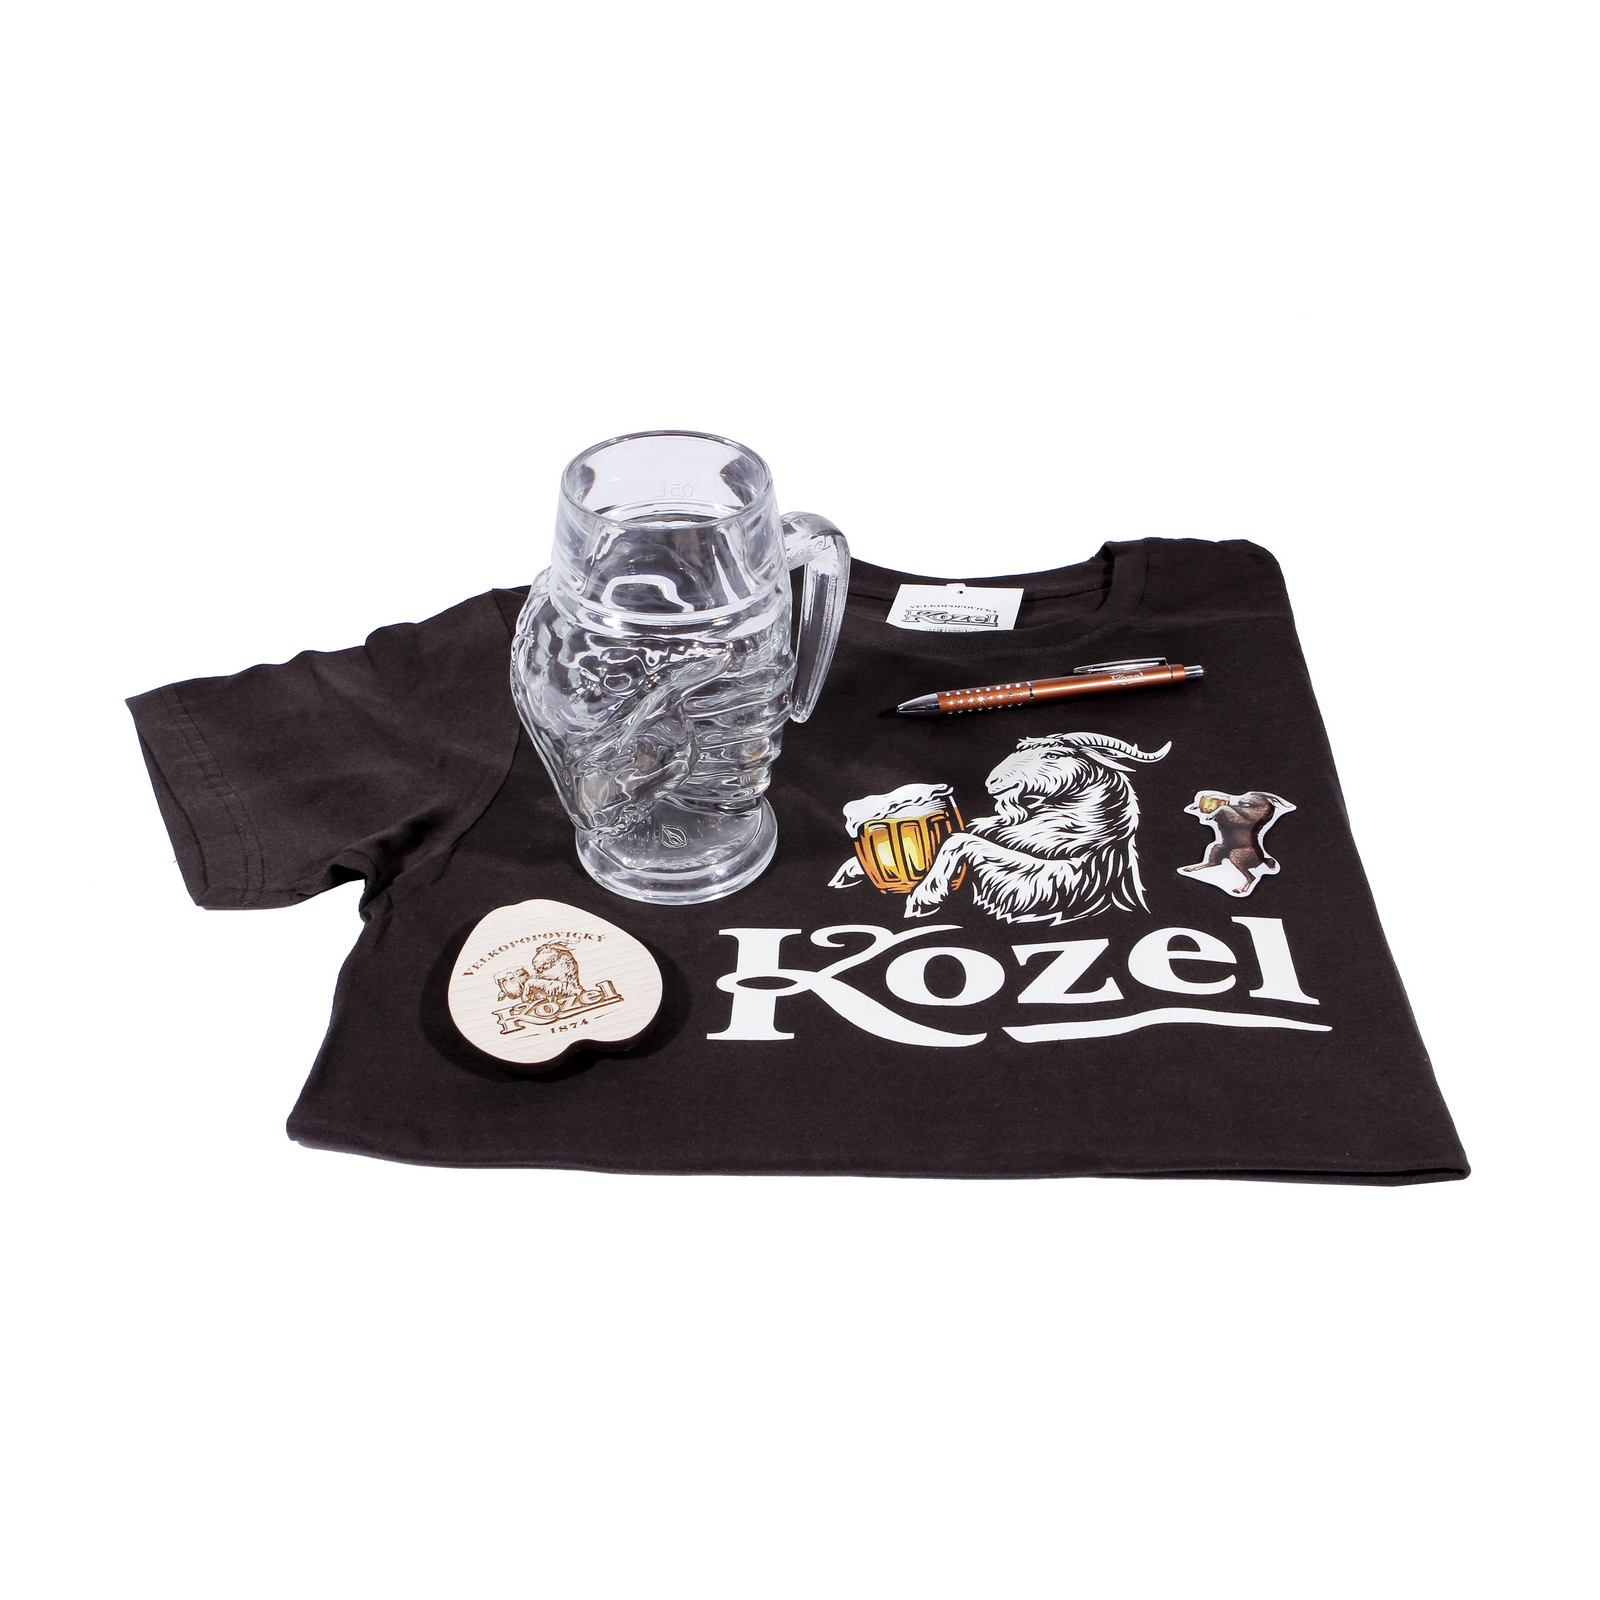 Kozel box for men